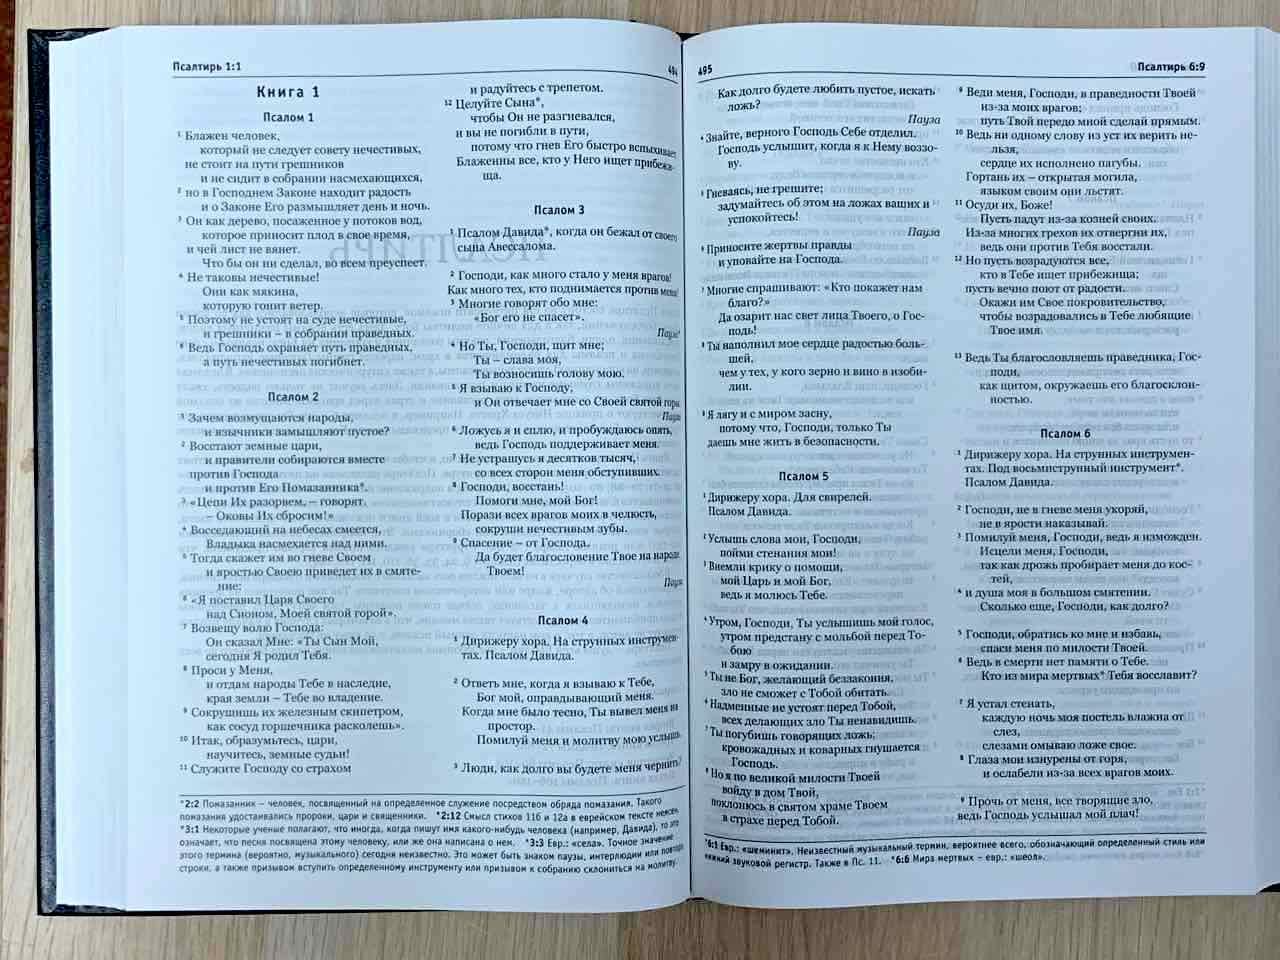 Библия в современном переводе (новый русский перевод) 073 цвет черный, с небольшими дефектами на внешней обложке